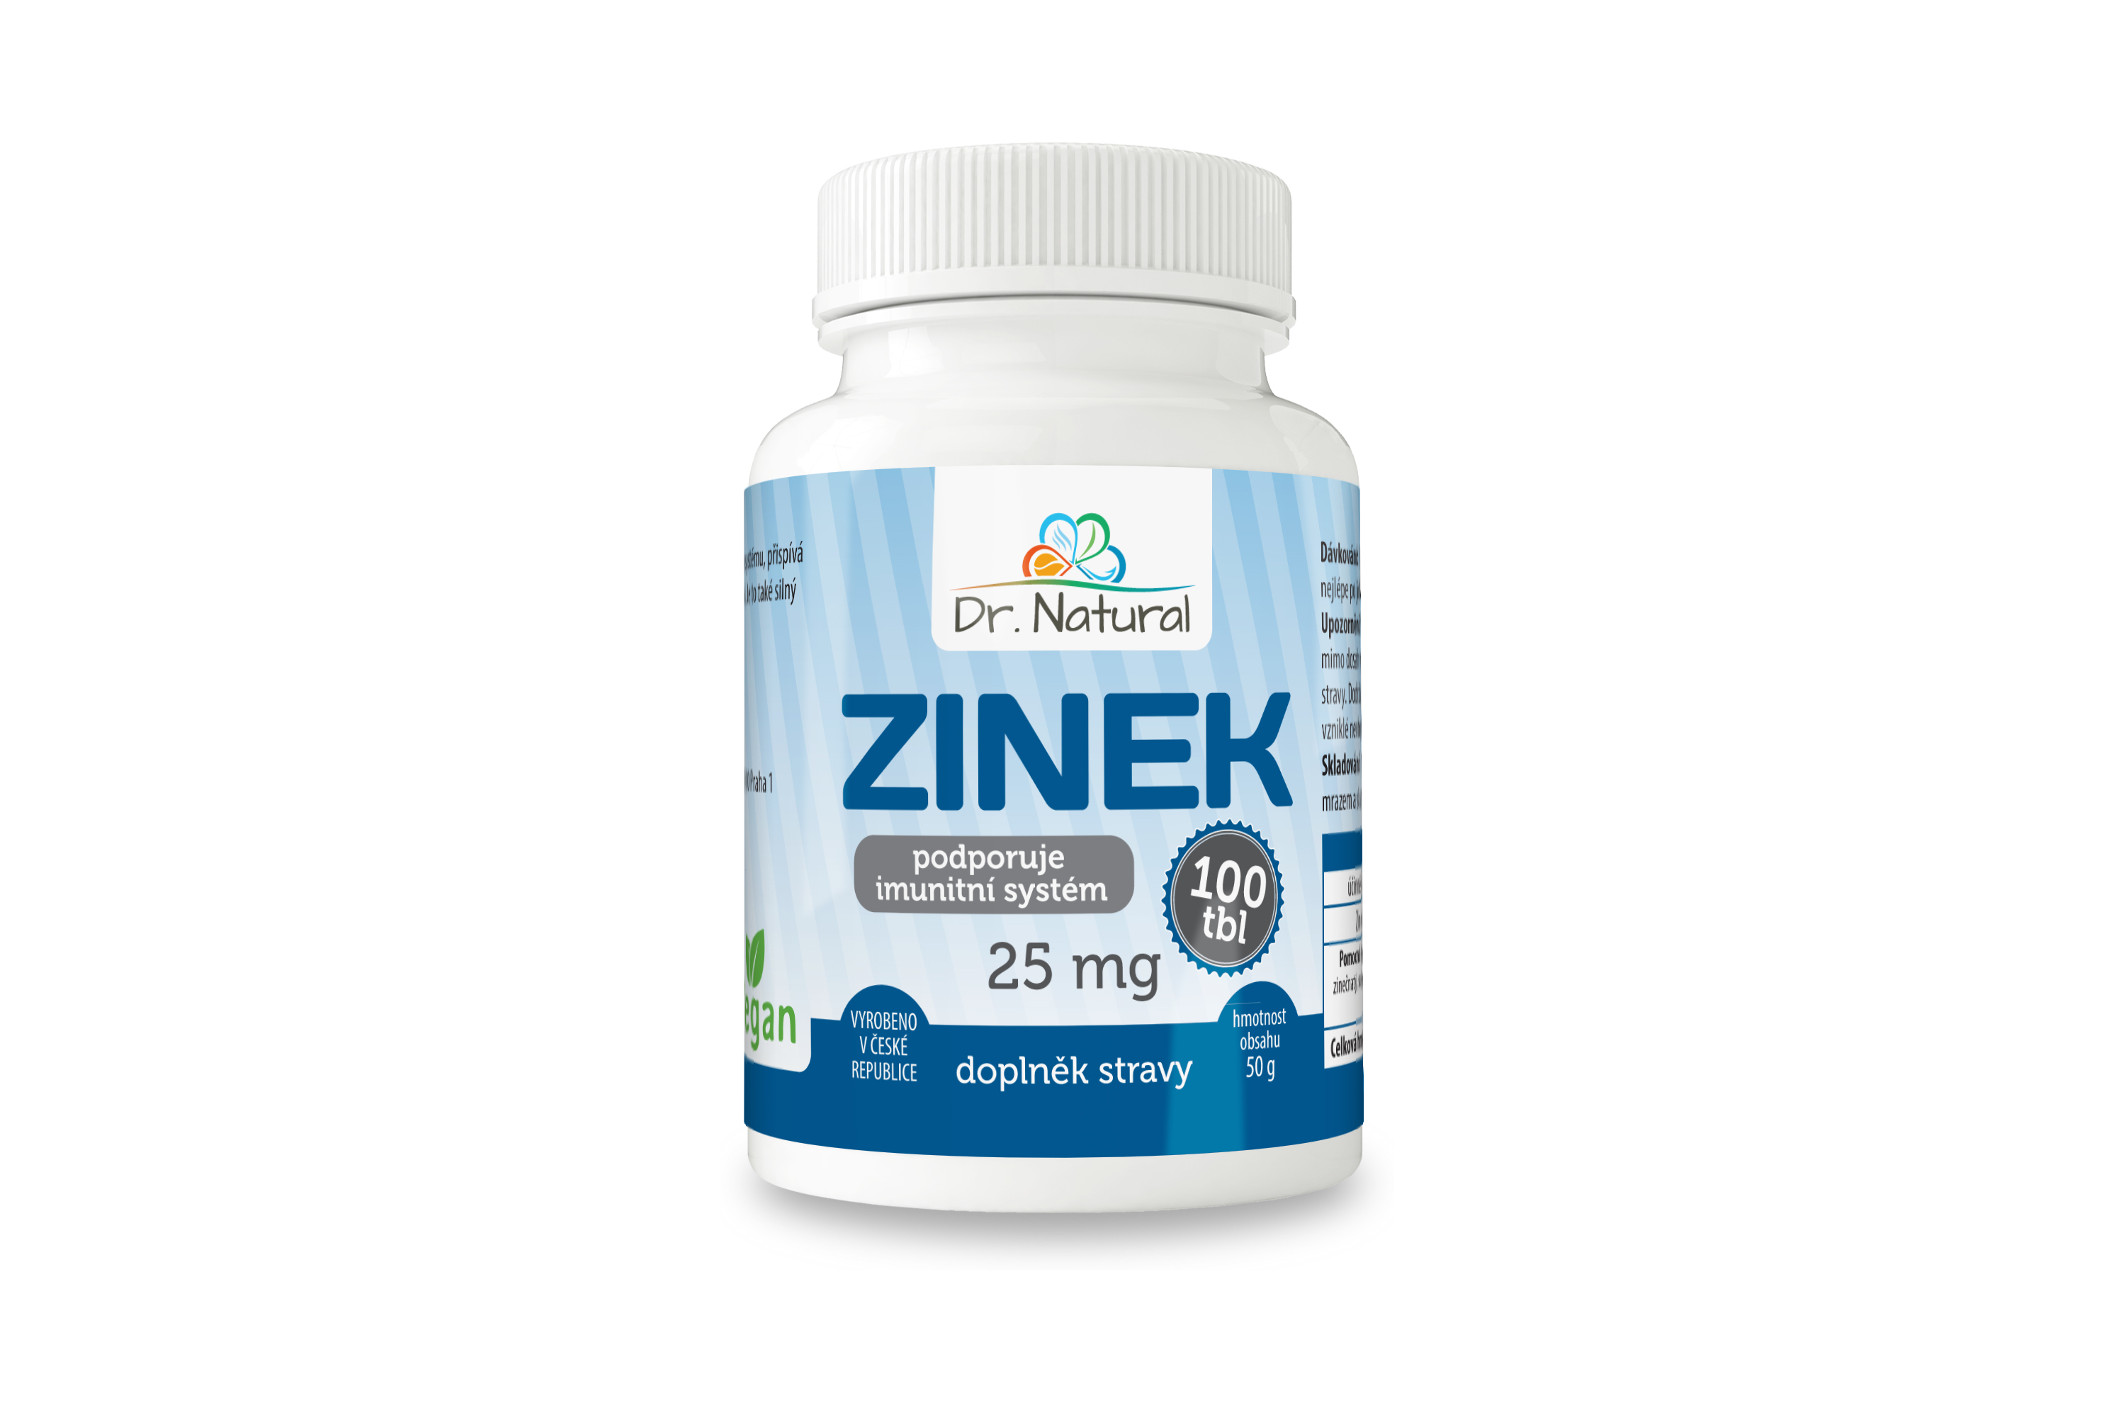 Dr. Natural Zinek 25 mg 100 tablet 50g